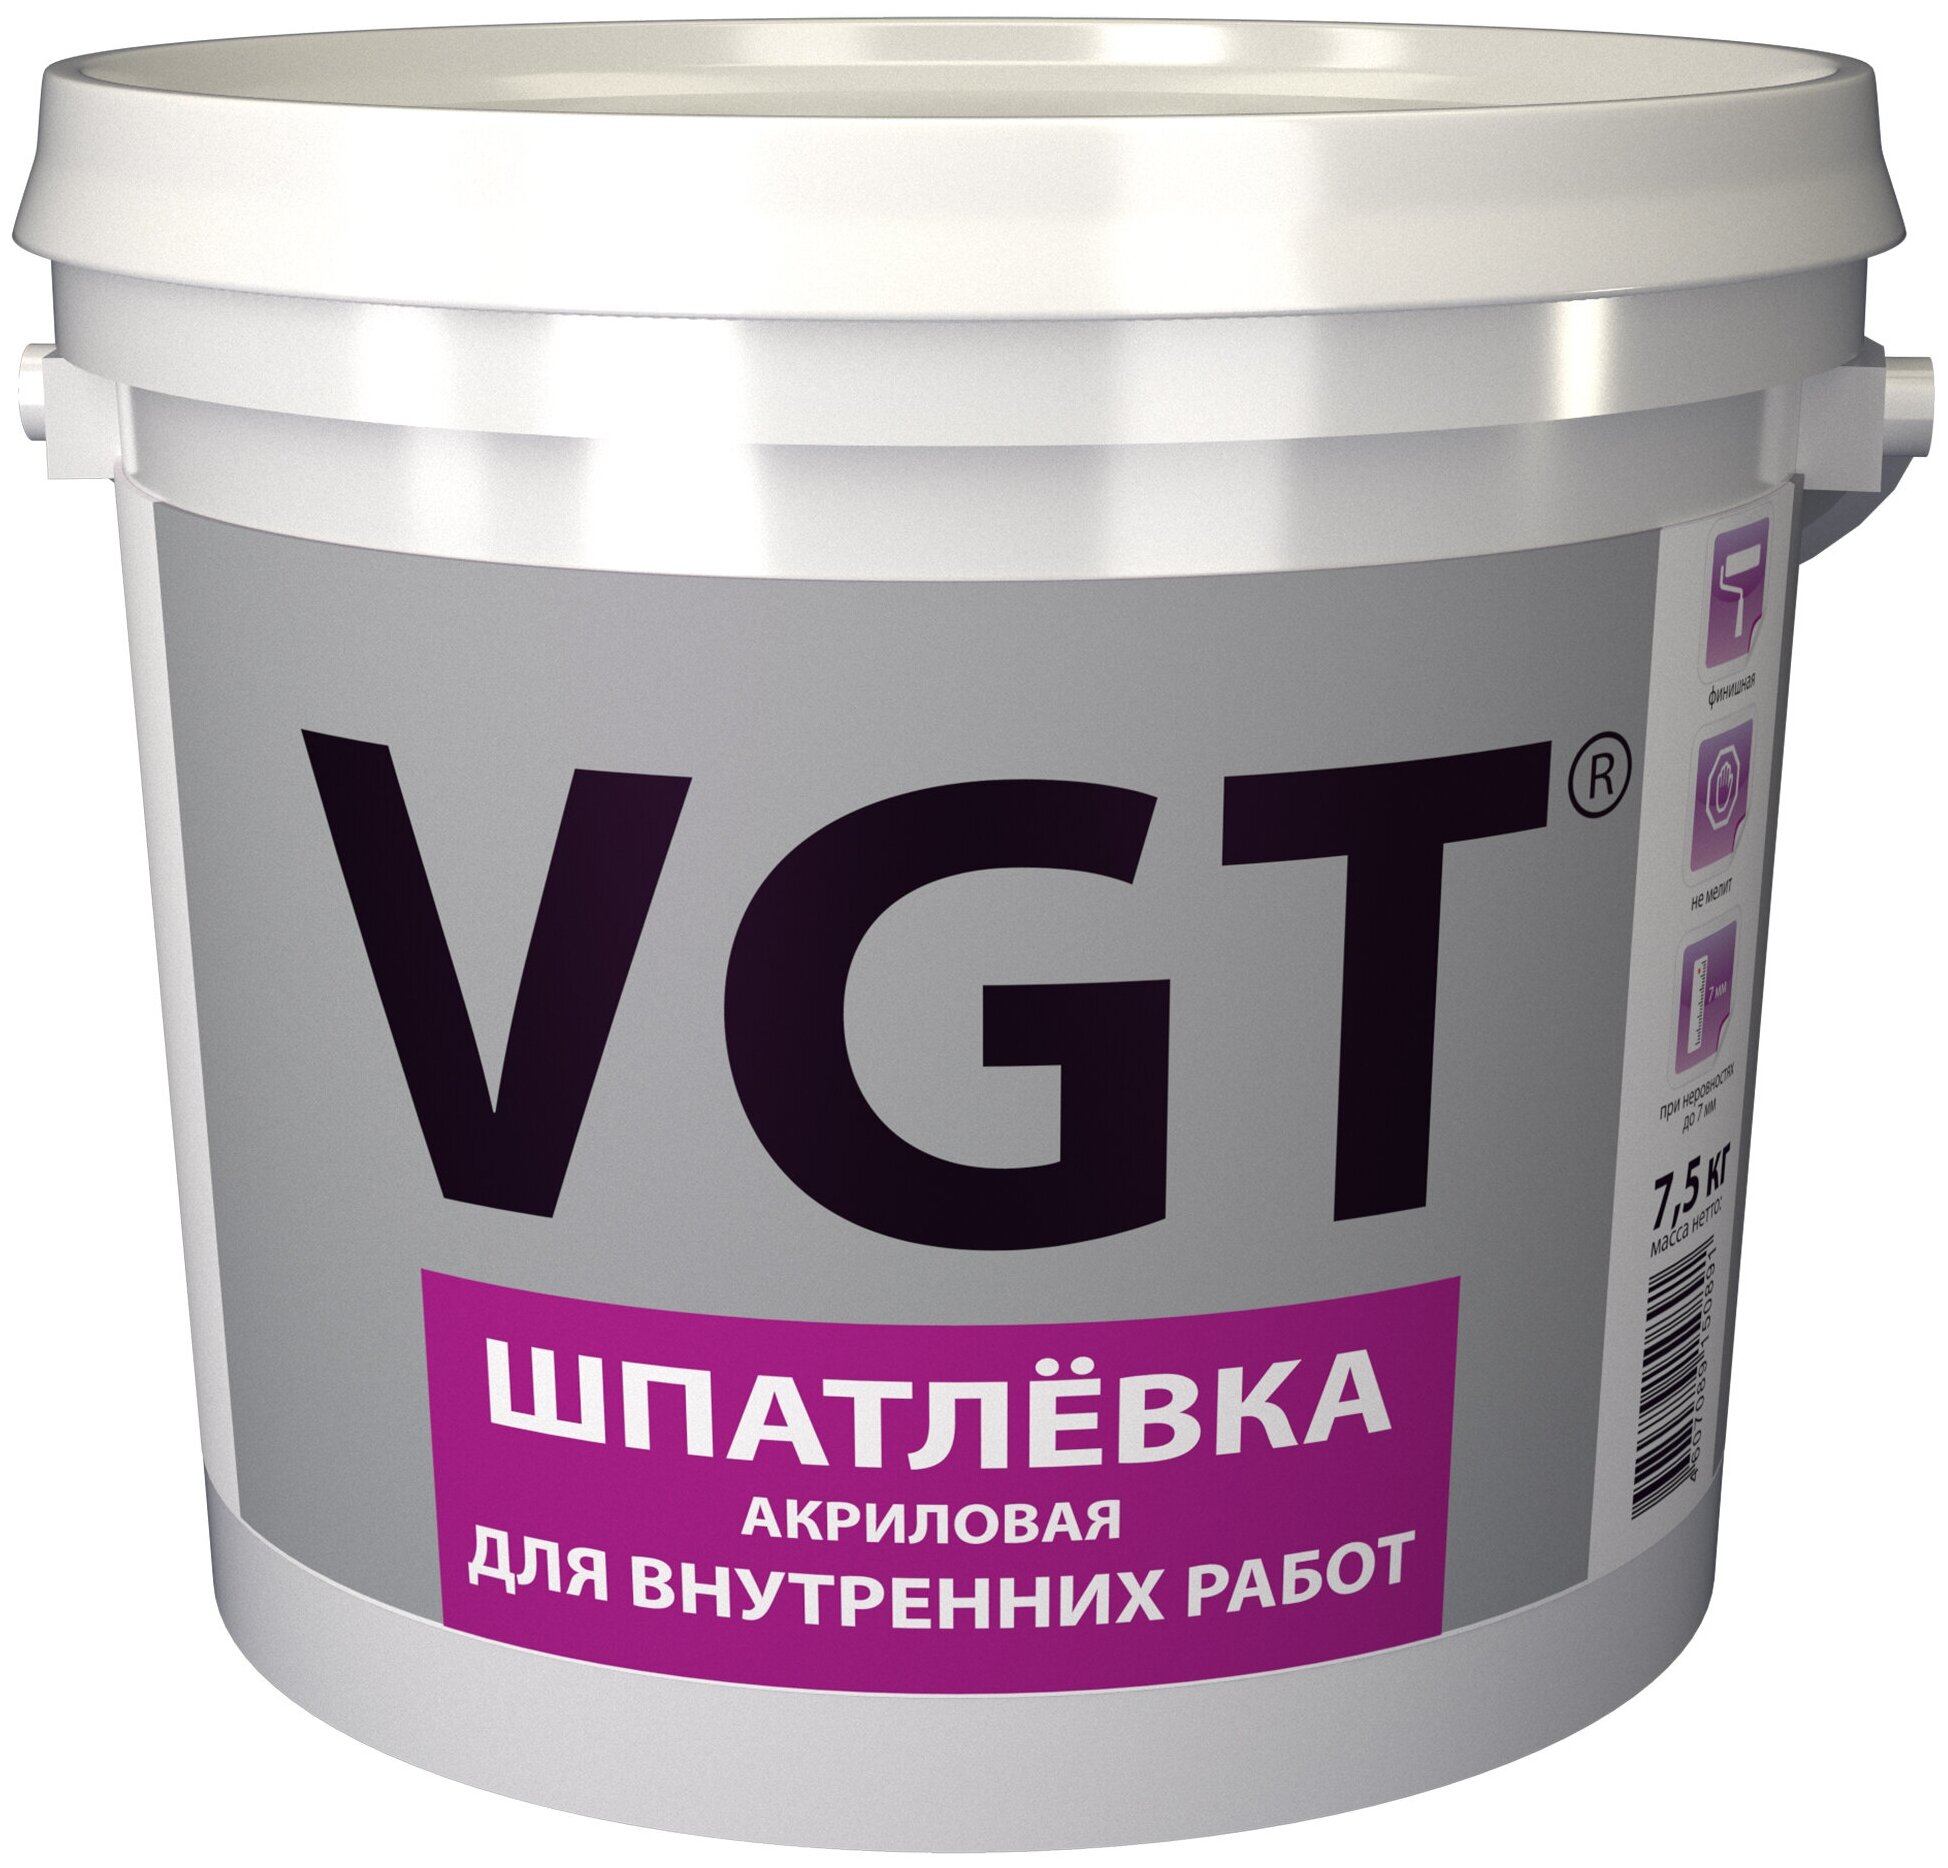 Шпатлевка акриловая для внутренних работ VGT (7,5кг)